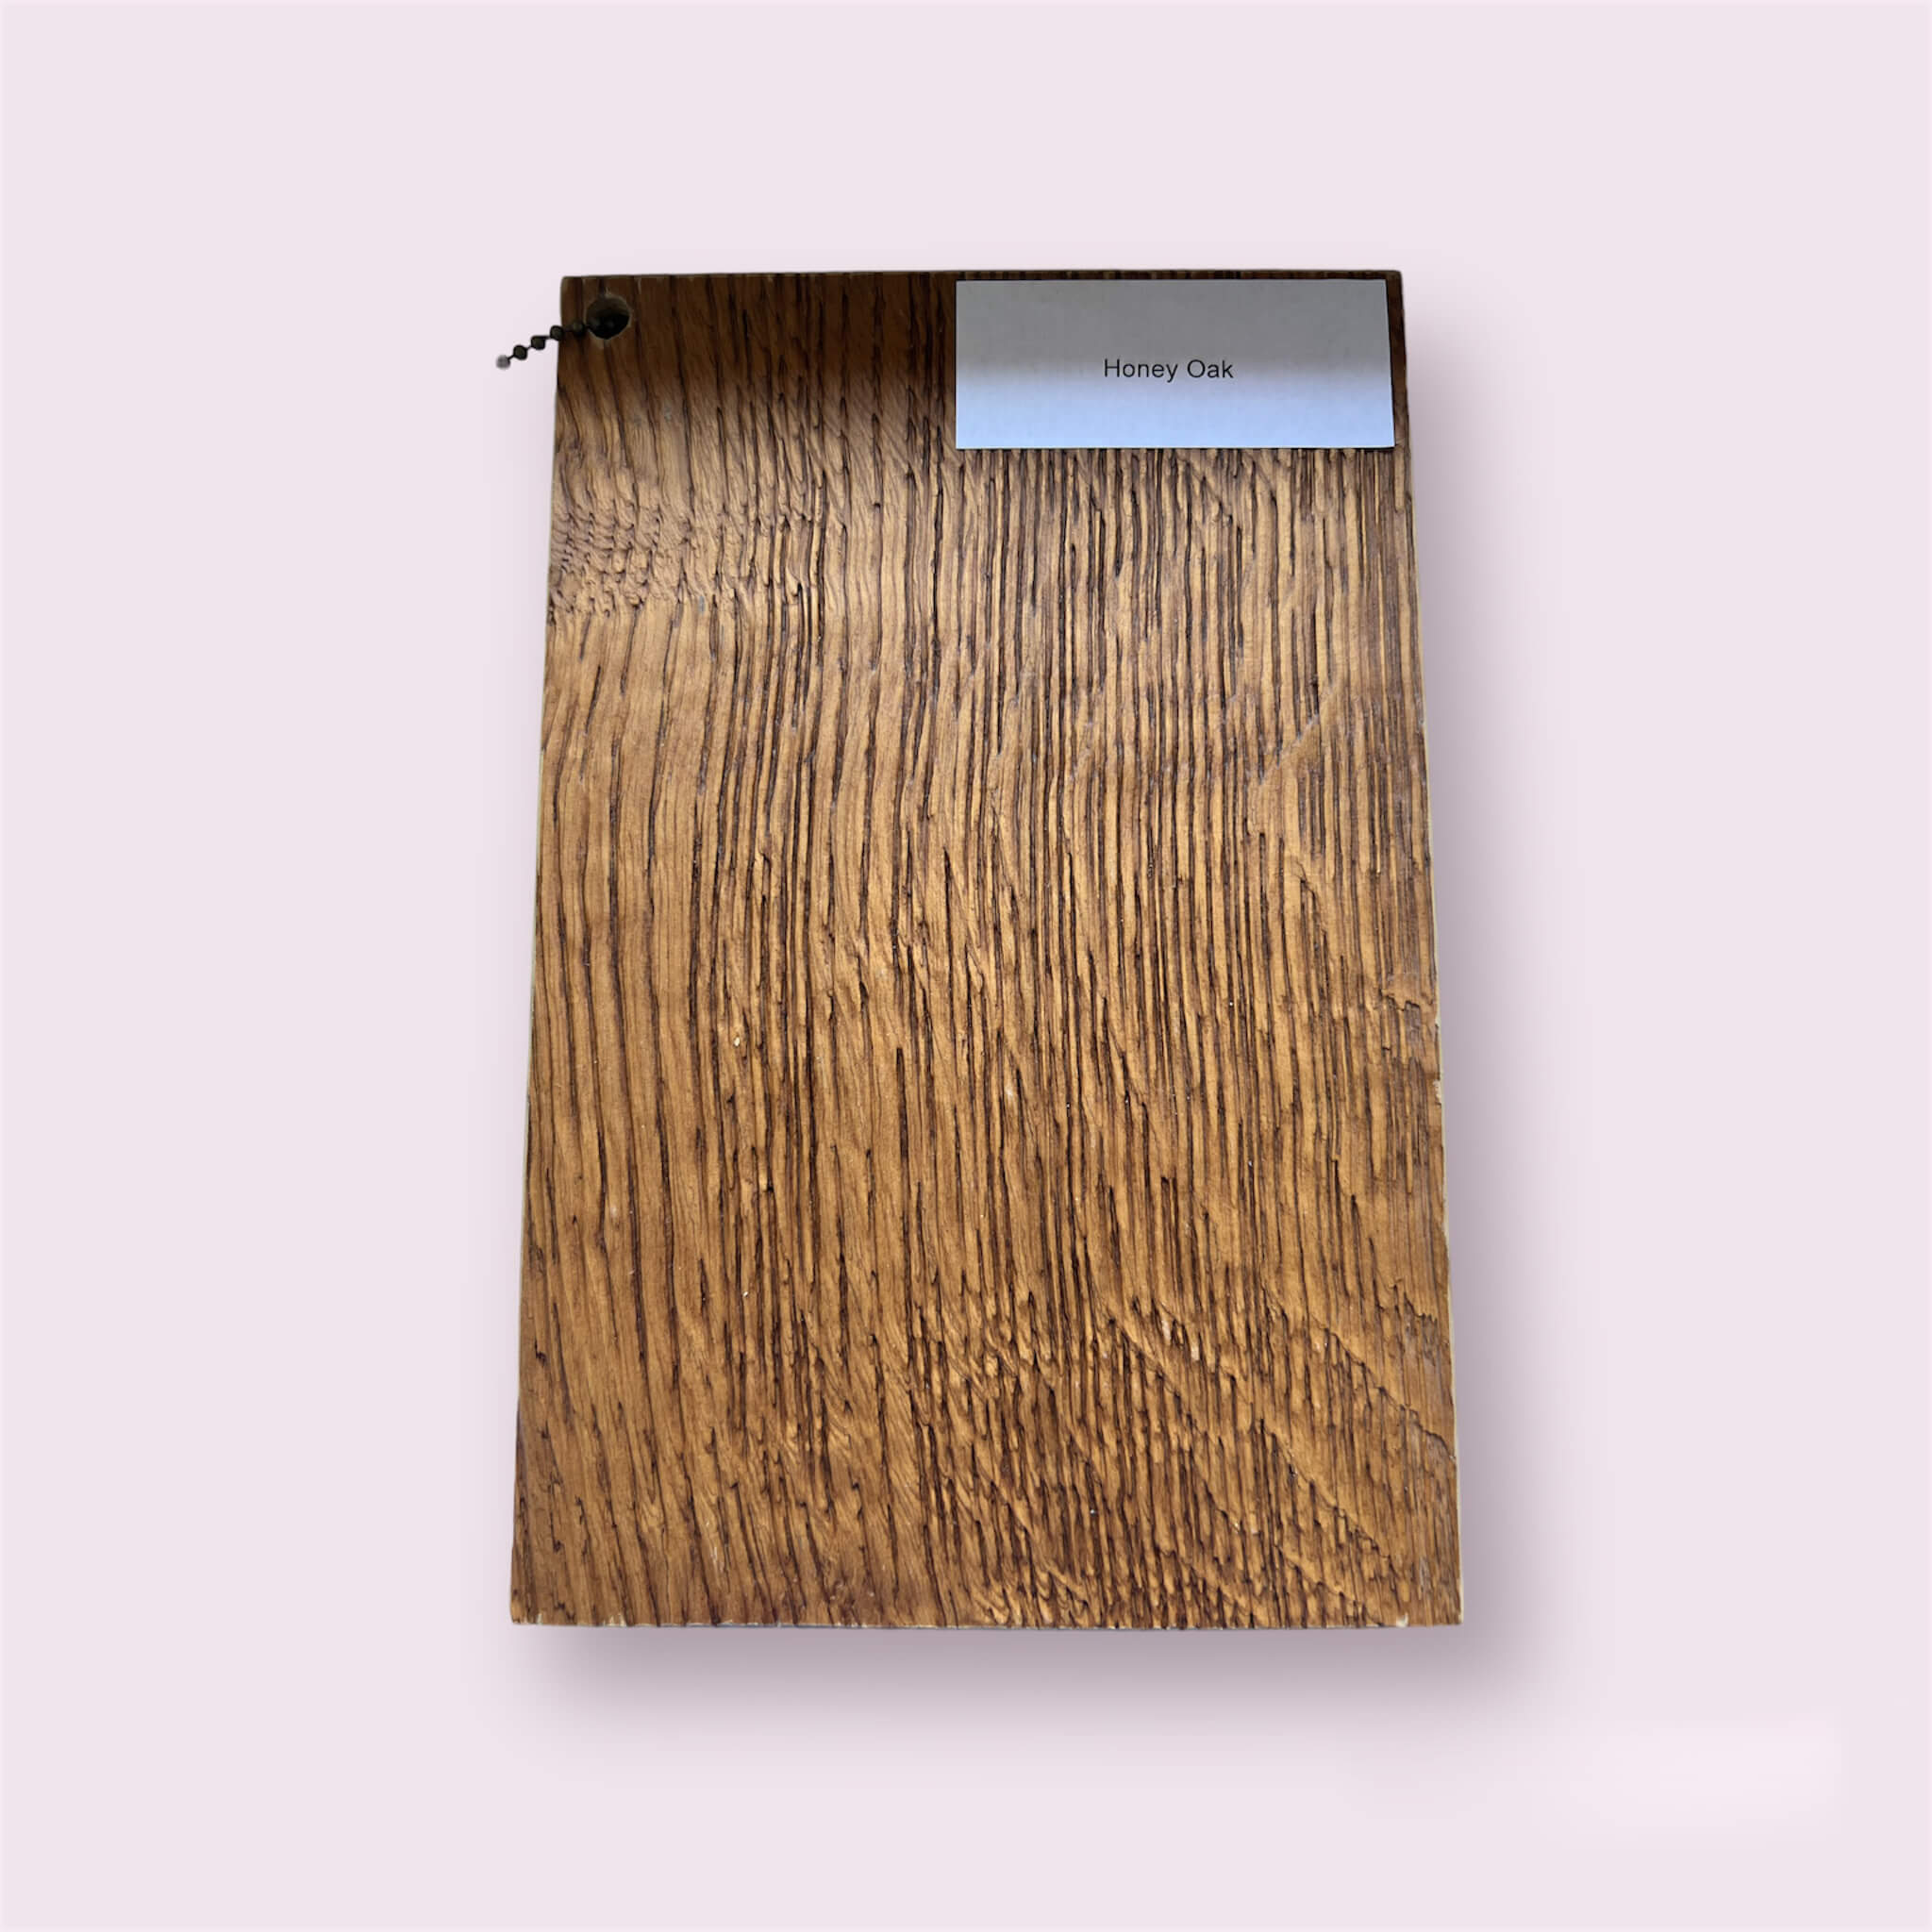 Zdjęcie przedstawia fornir Honey Oak - cienką warstwę drewna o ciepłym wyglądzie w kolorze Honey Oak